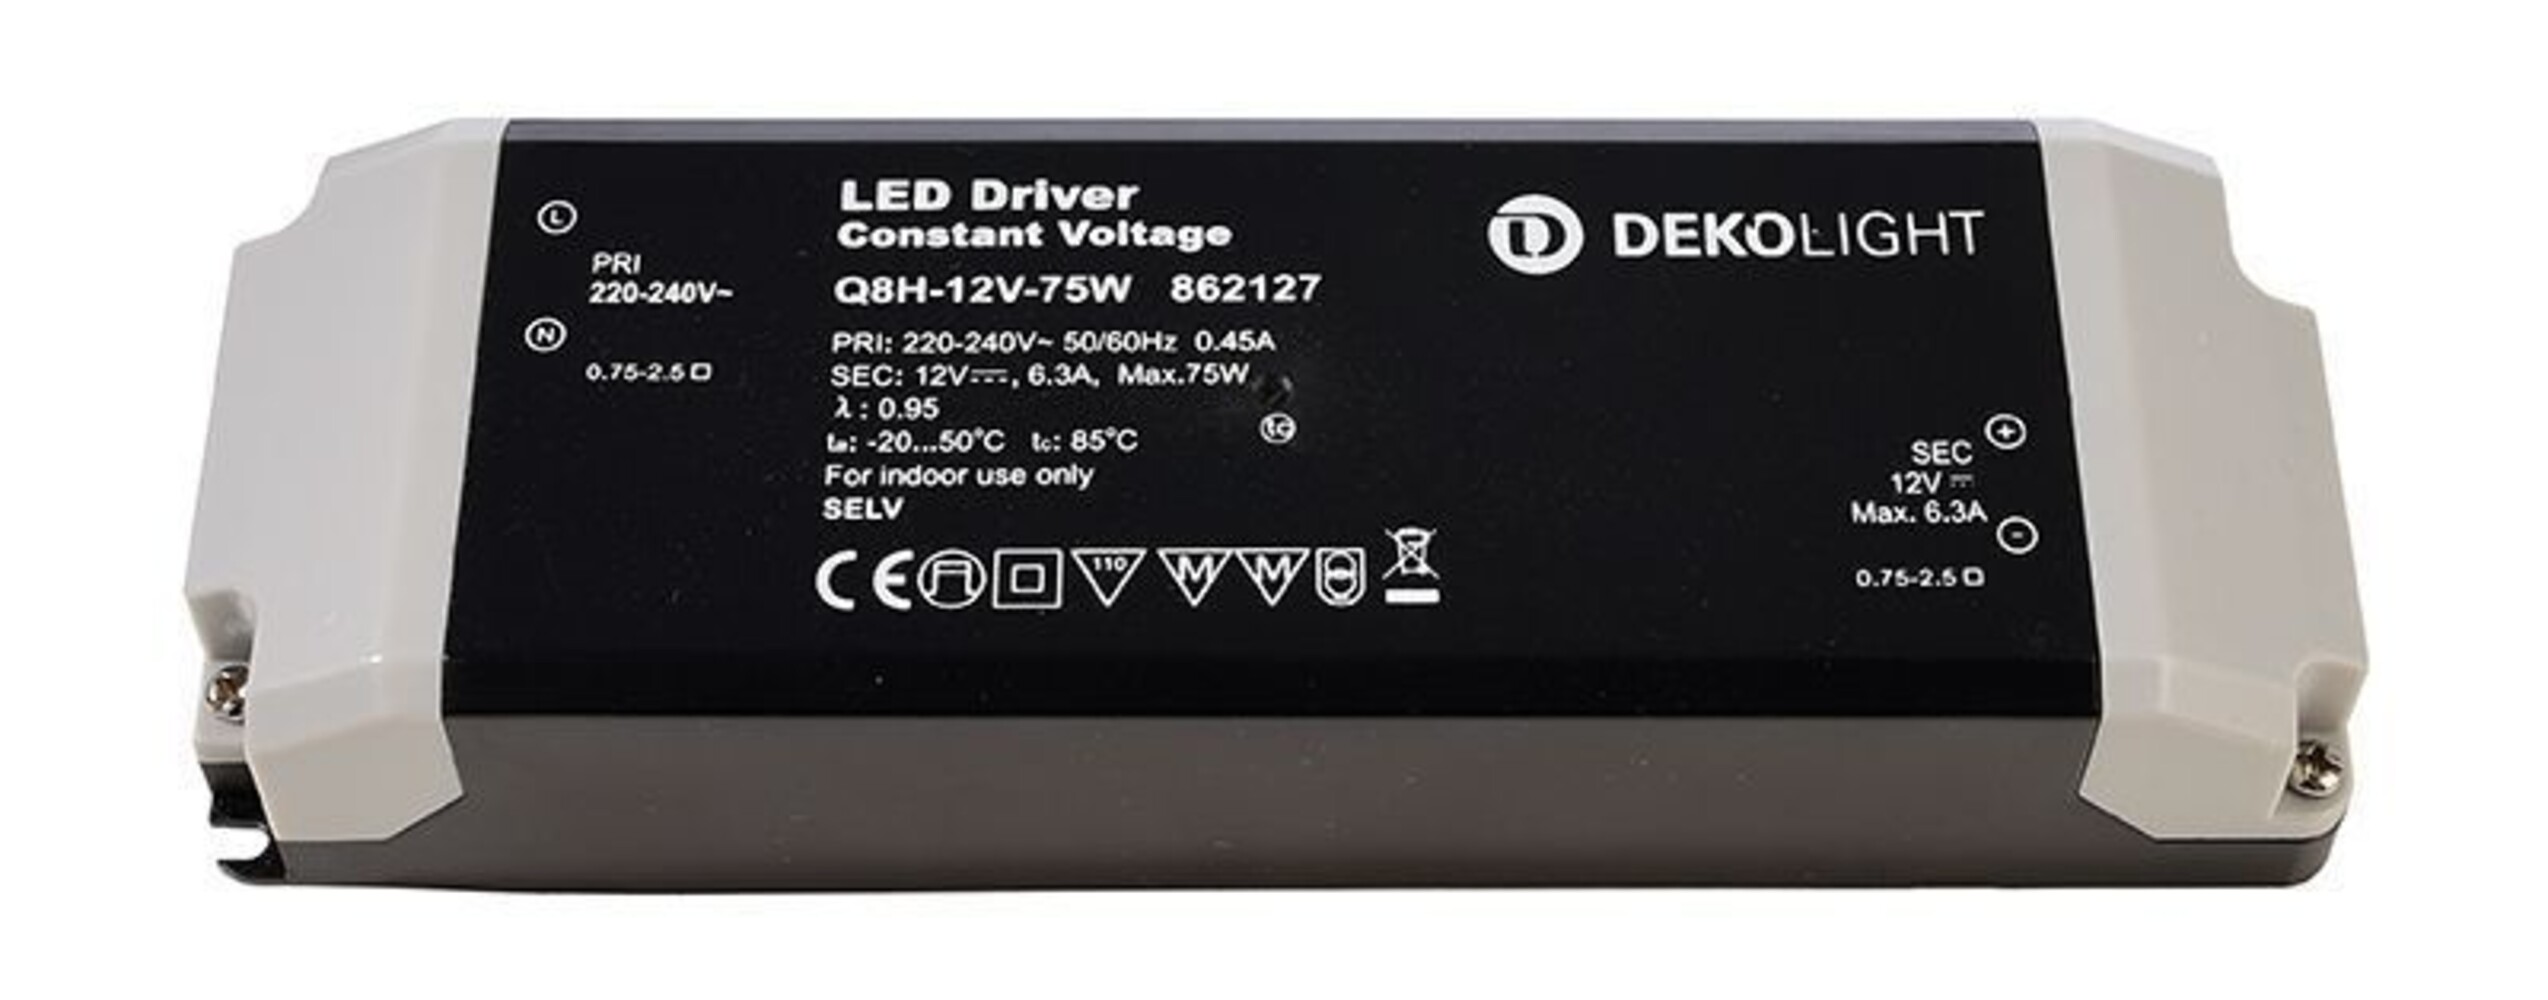 Hochwertiges spannungskonstantes LED Netzteil von der Marke Deko-Light